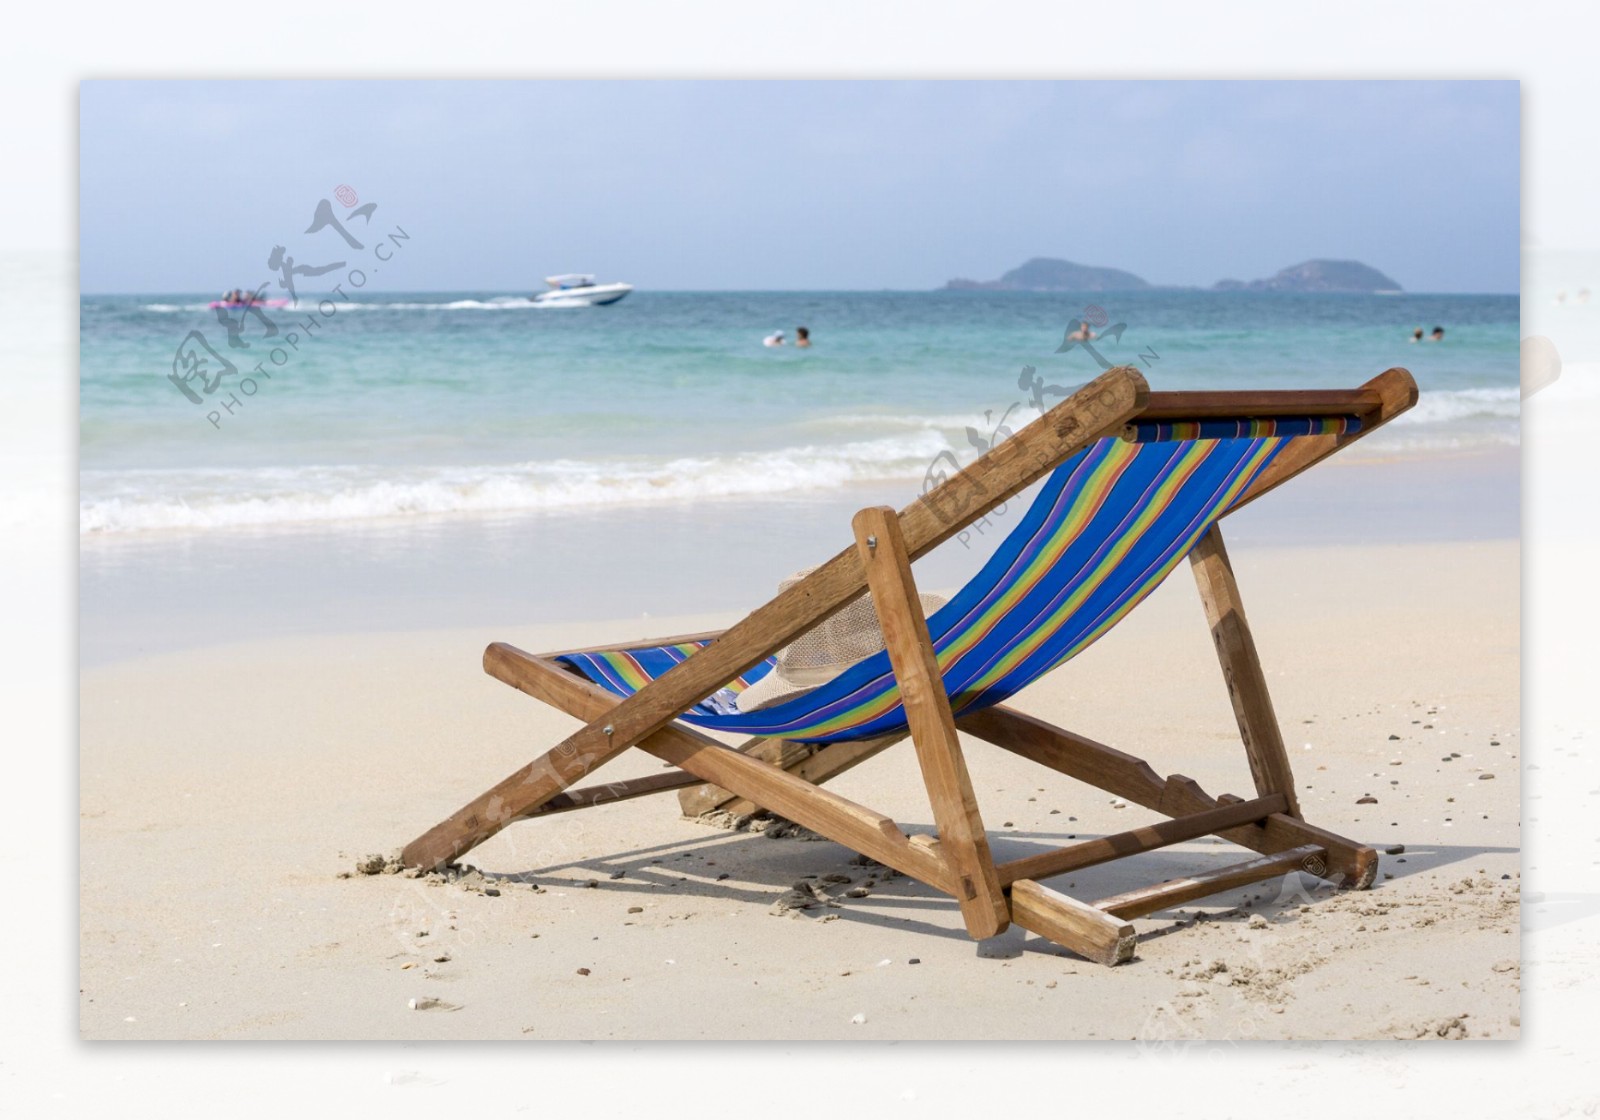 沙滩休闲躺椅与海水风景